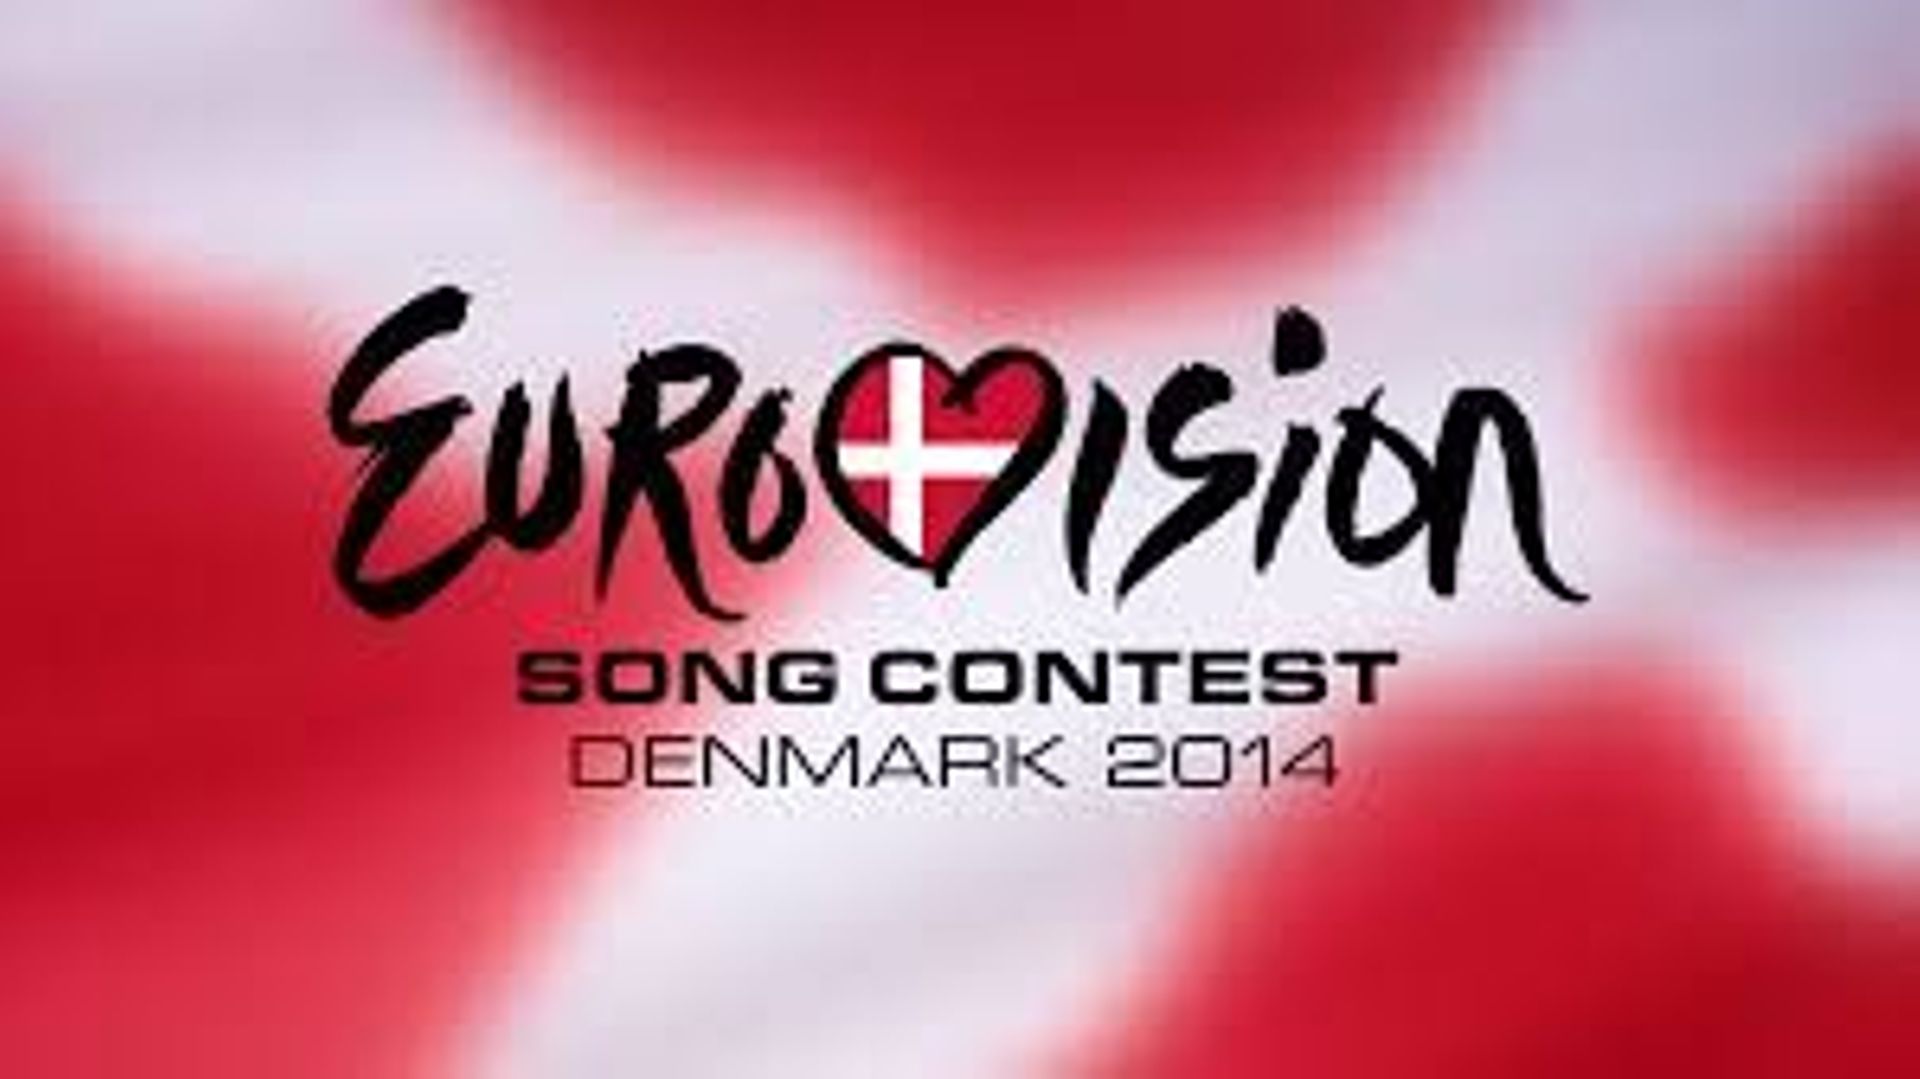 Eurovision: le ou la candidat(e) belge se produira lors de la 1ère demi-finale le 6 mai